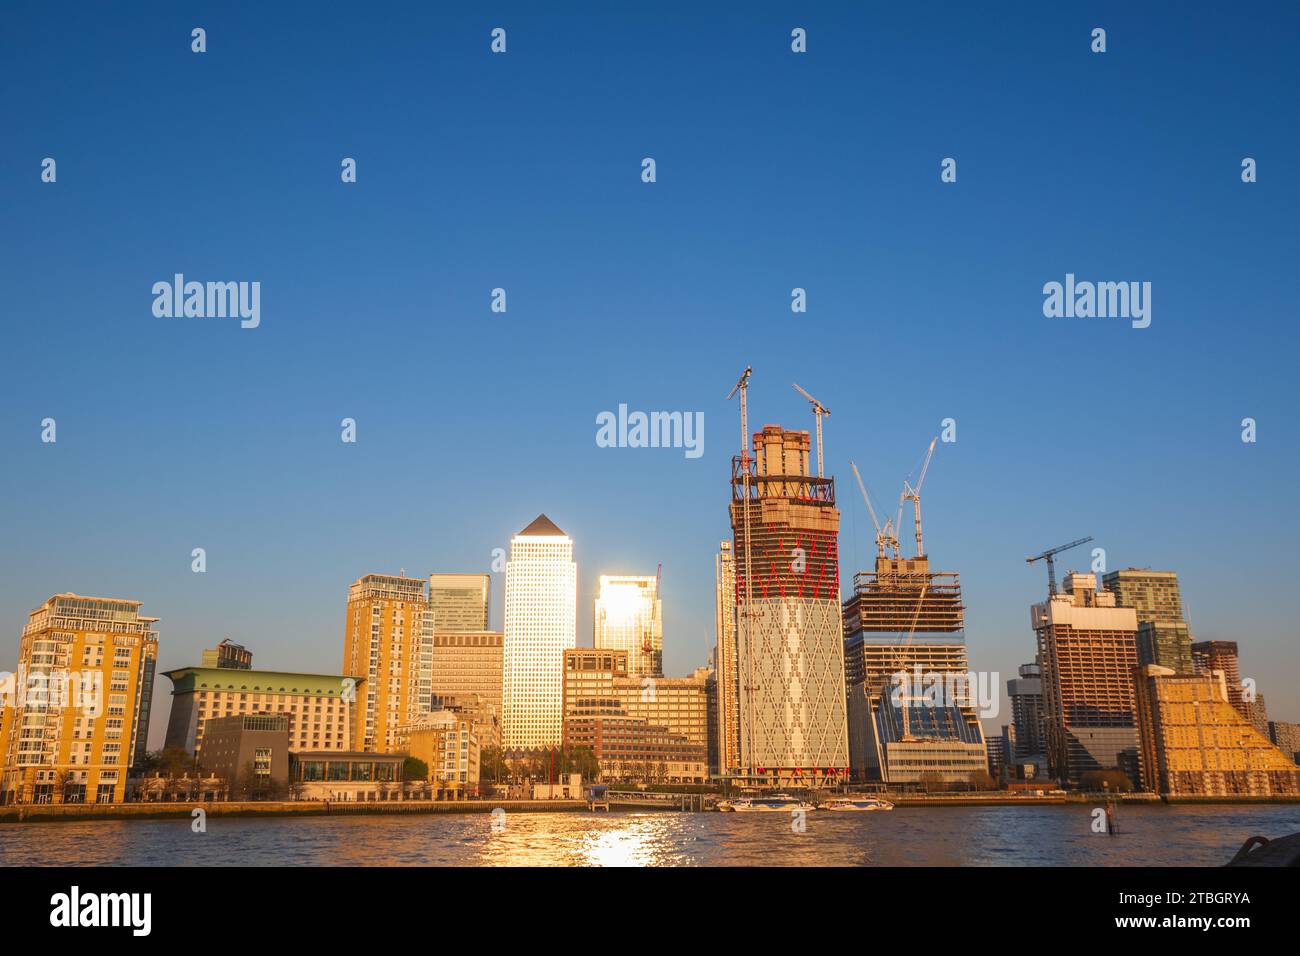 Vue panoramique, paysage urbain de Canary Wharf vu de Rotherhithe à Londres, Angleterre Banque D'Images